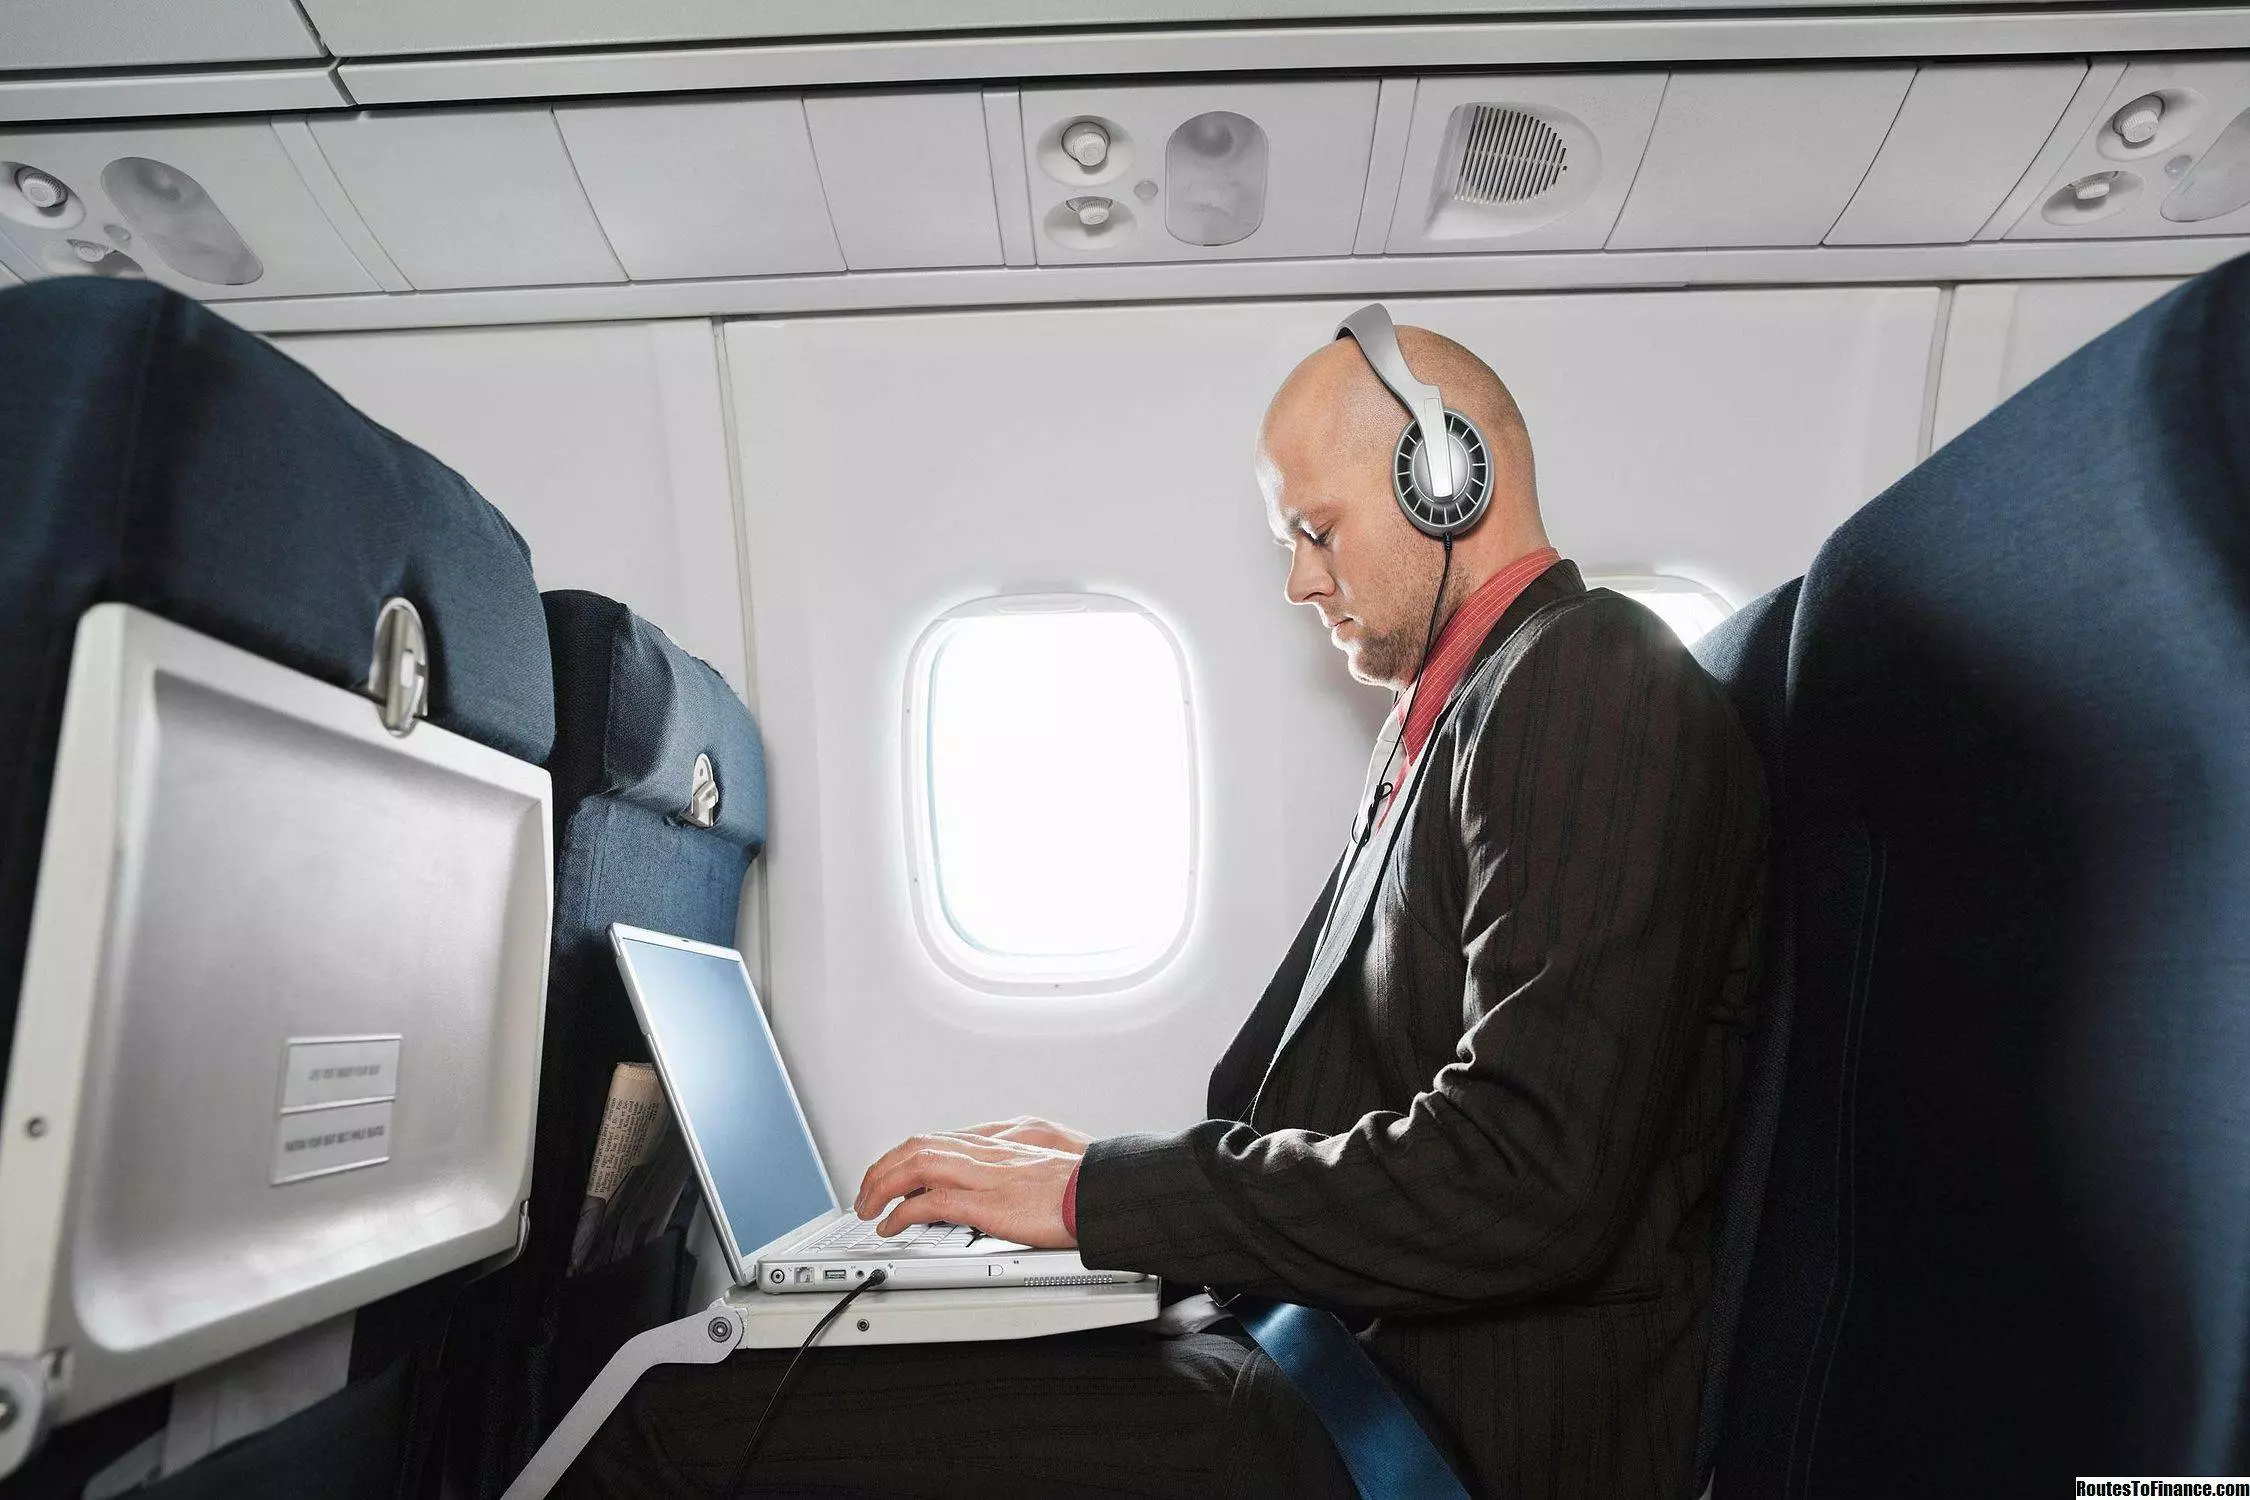 Можно ли в самолете пользоваться телефоном - есть ли там розетка, интернет